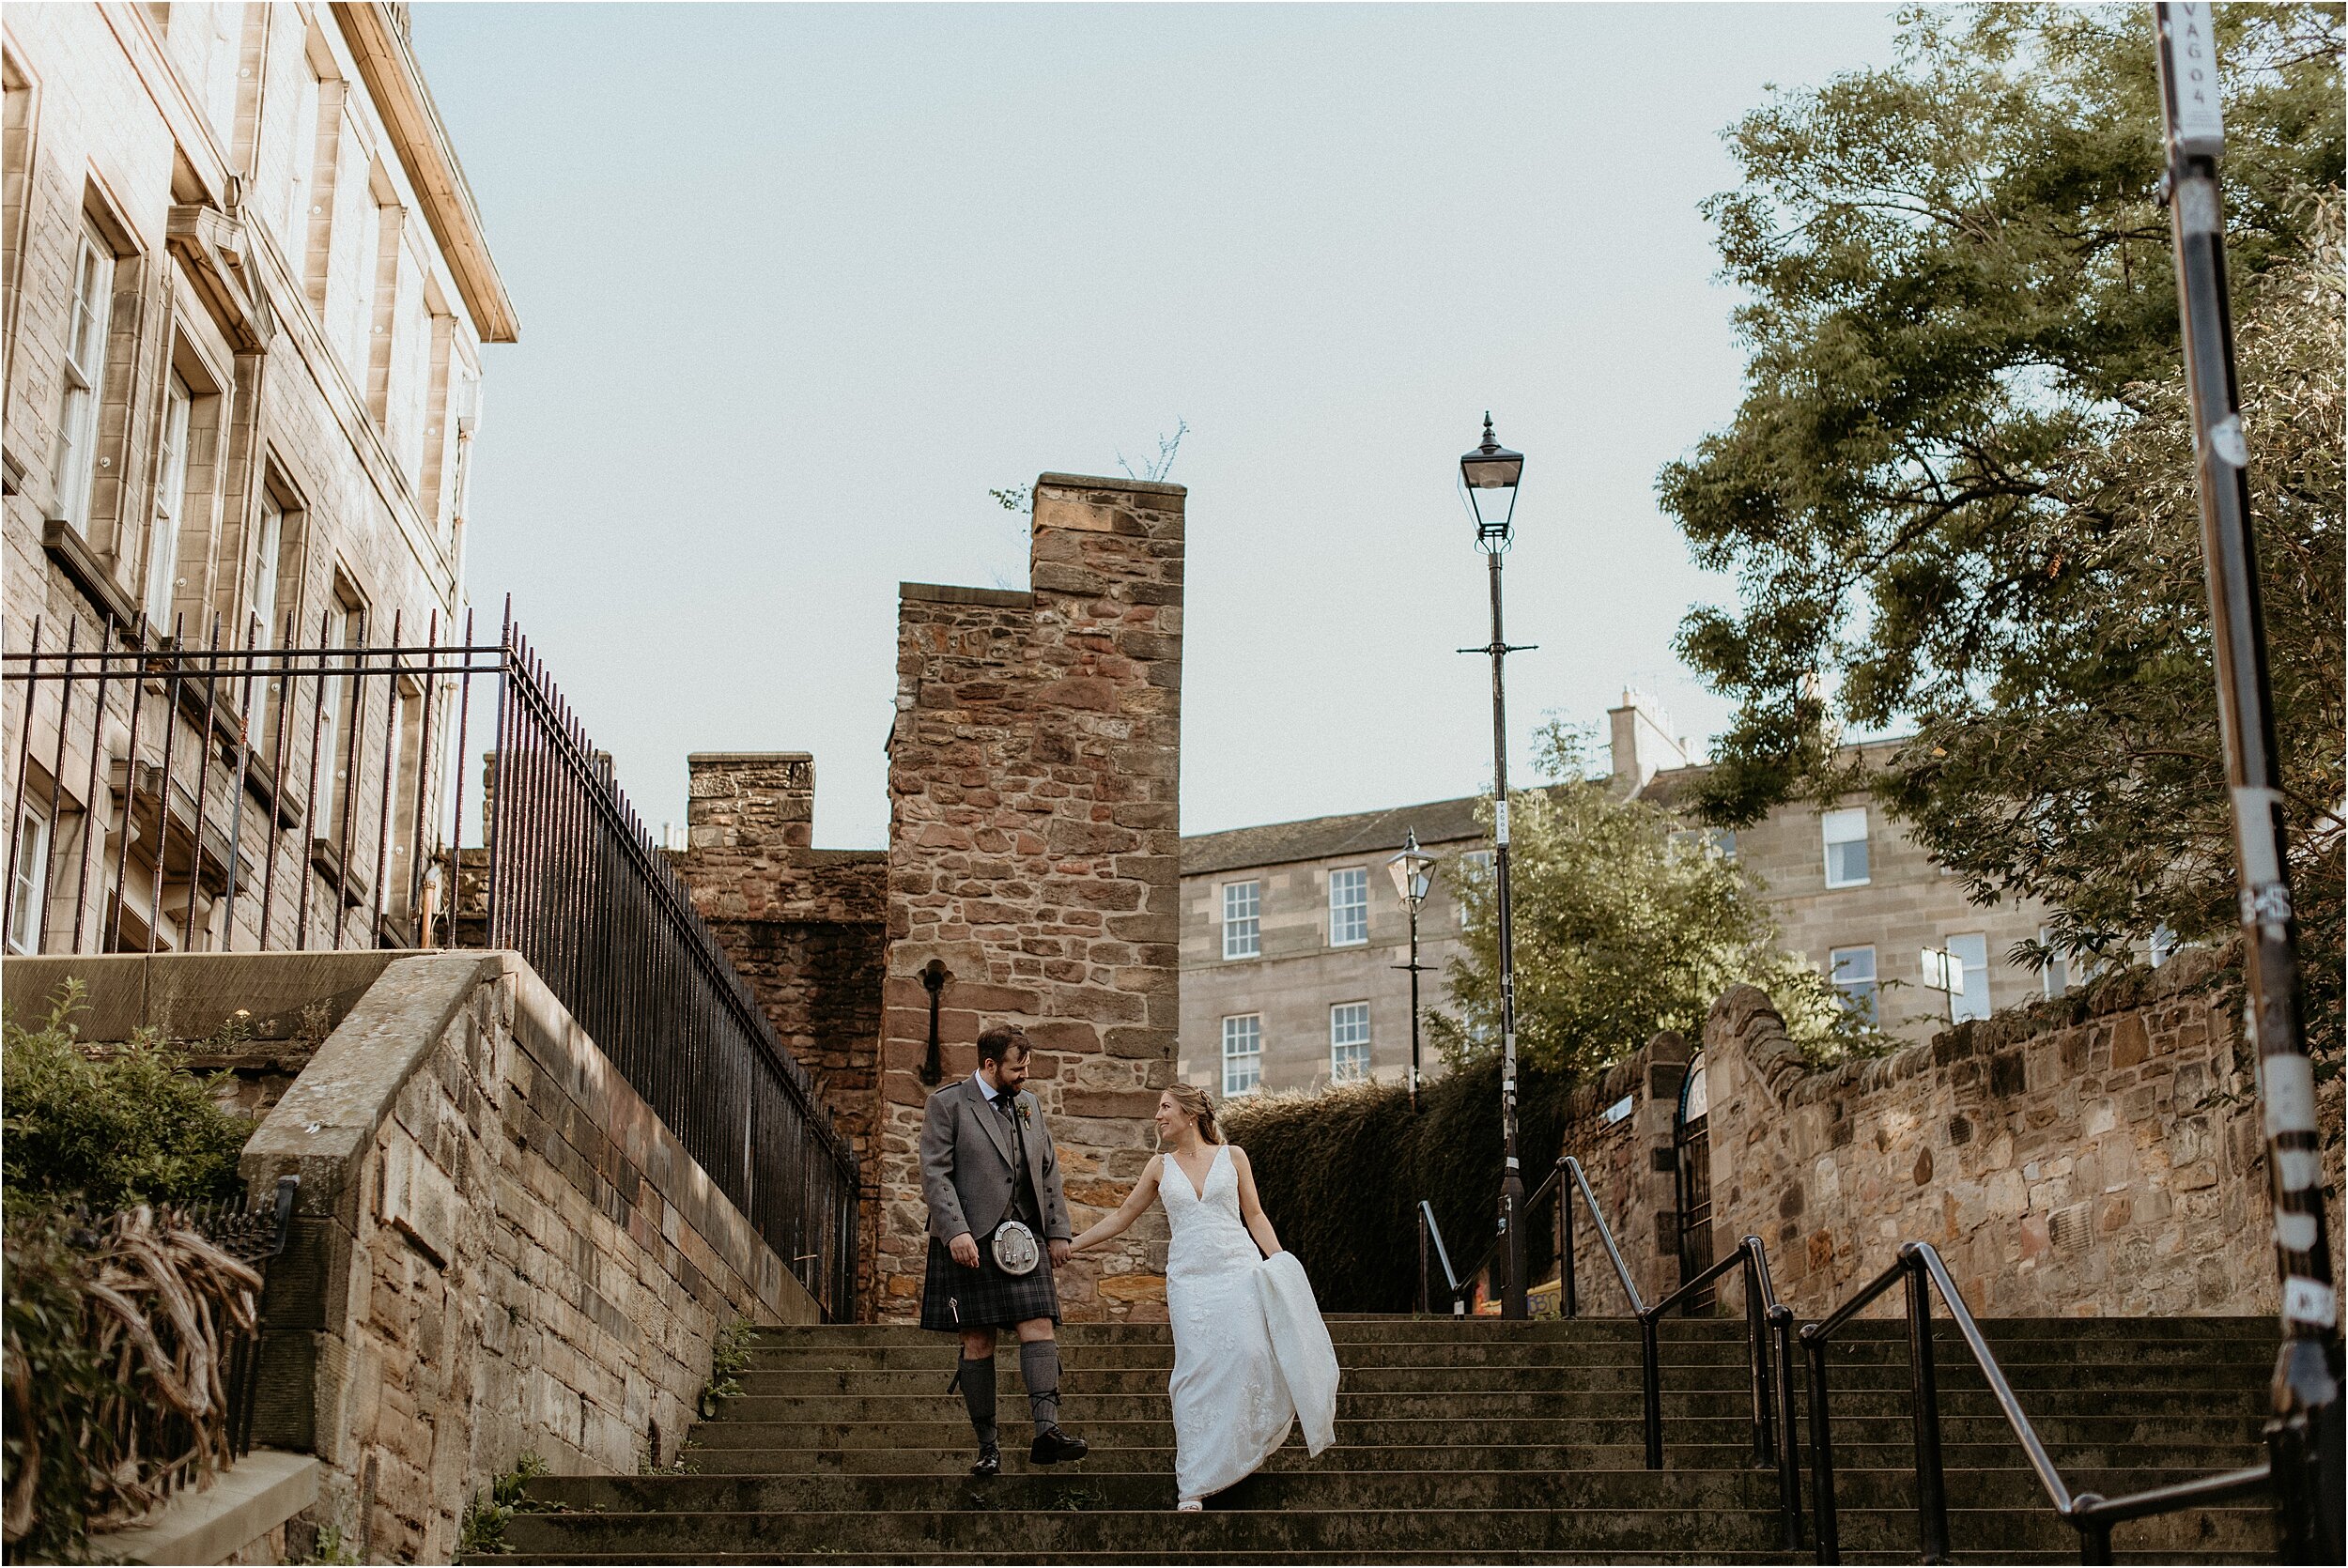 Timberyard-wedding-Edinburgh-66.jpg